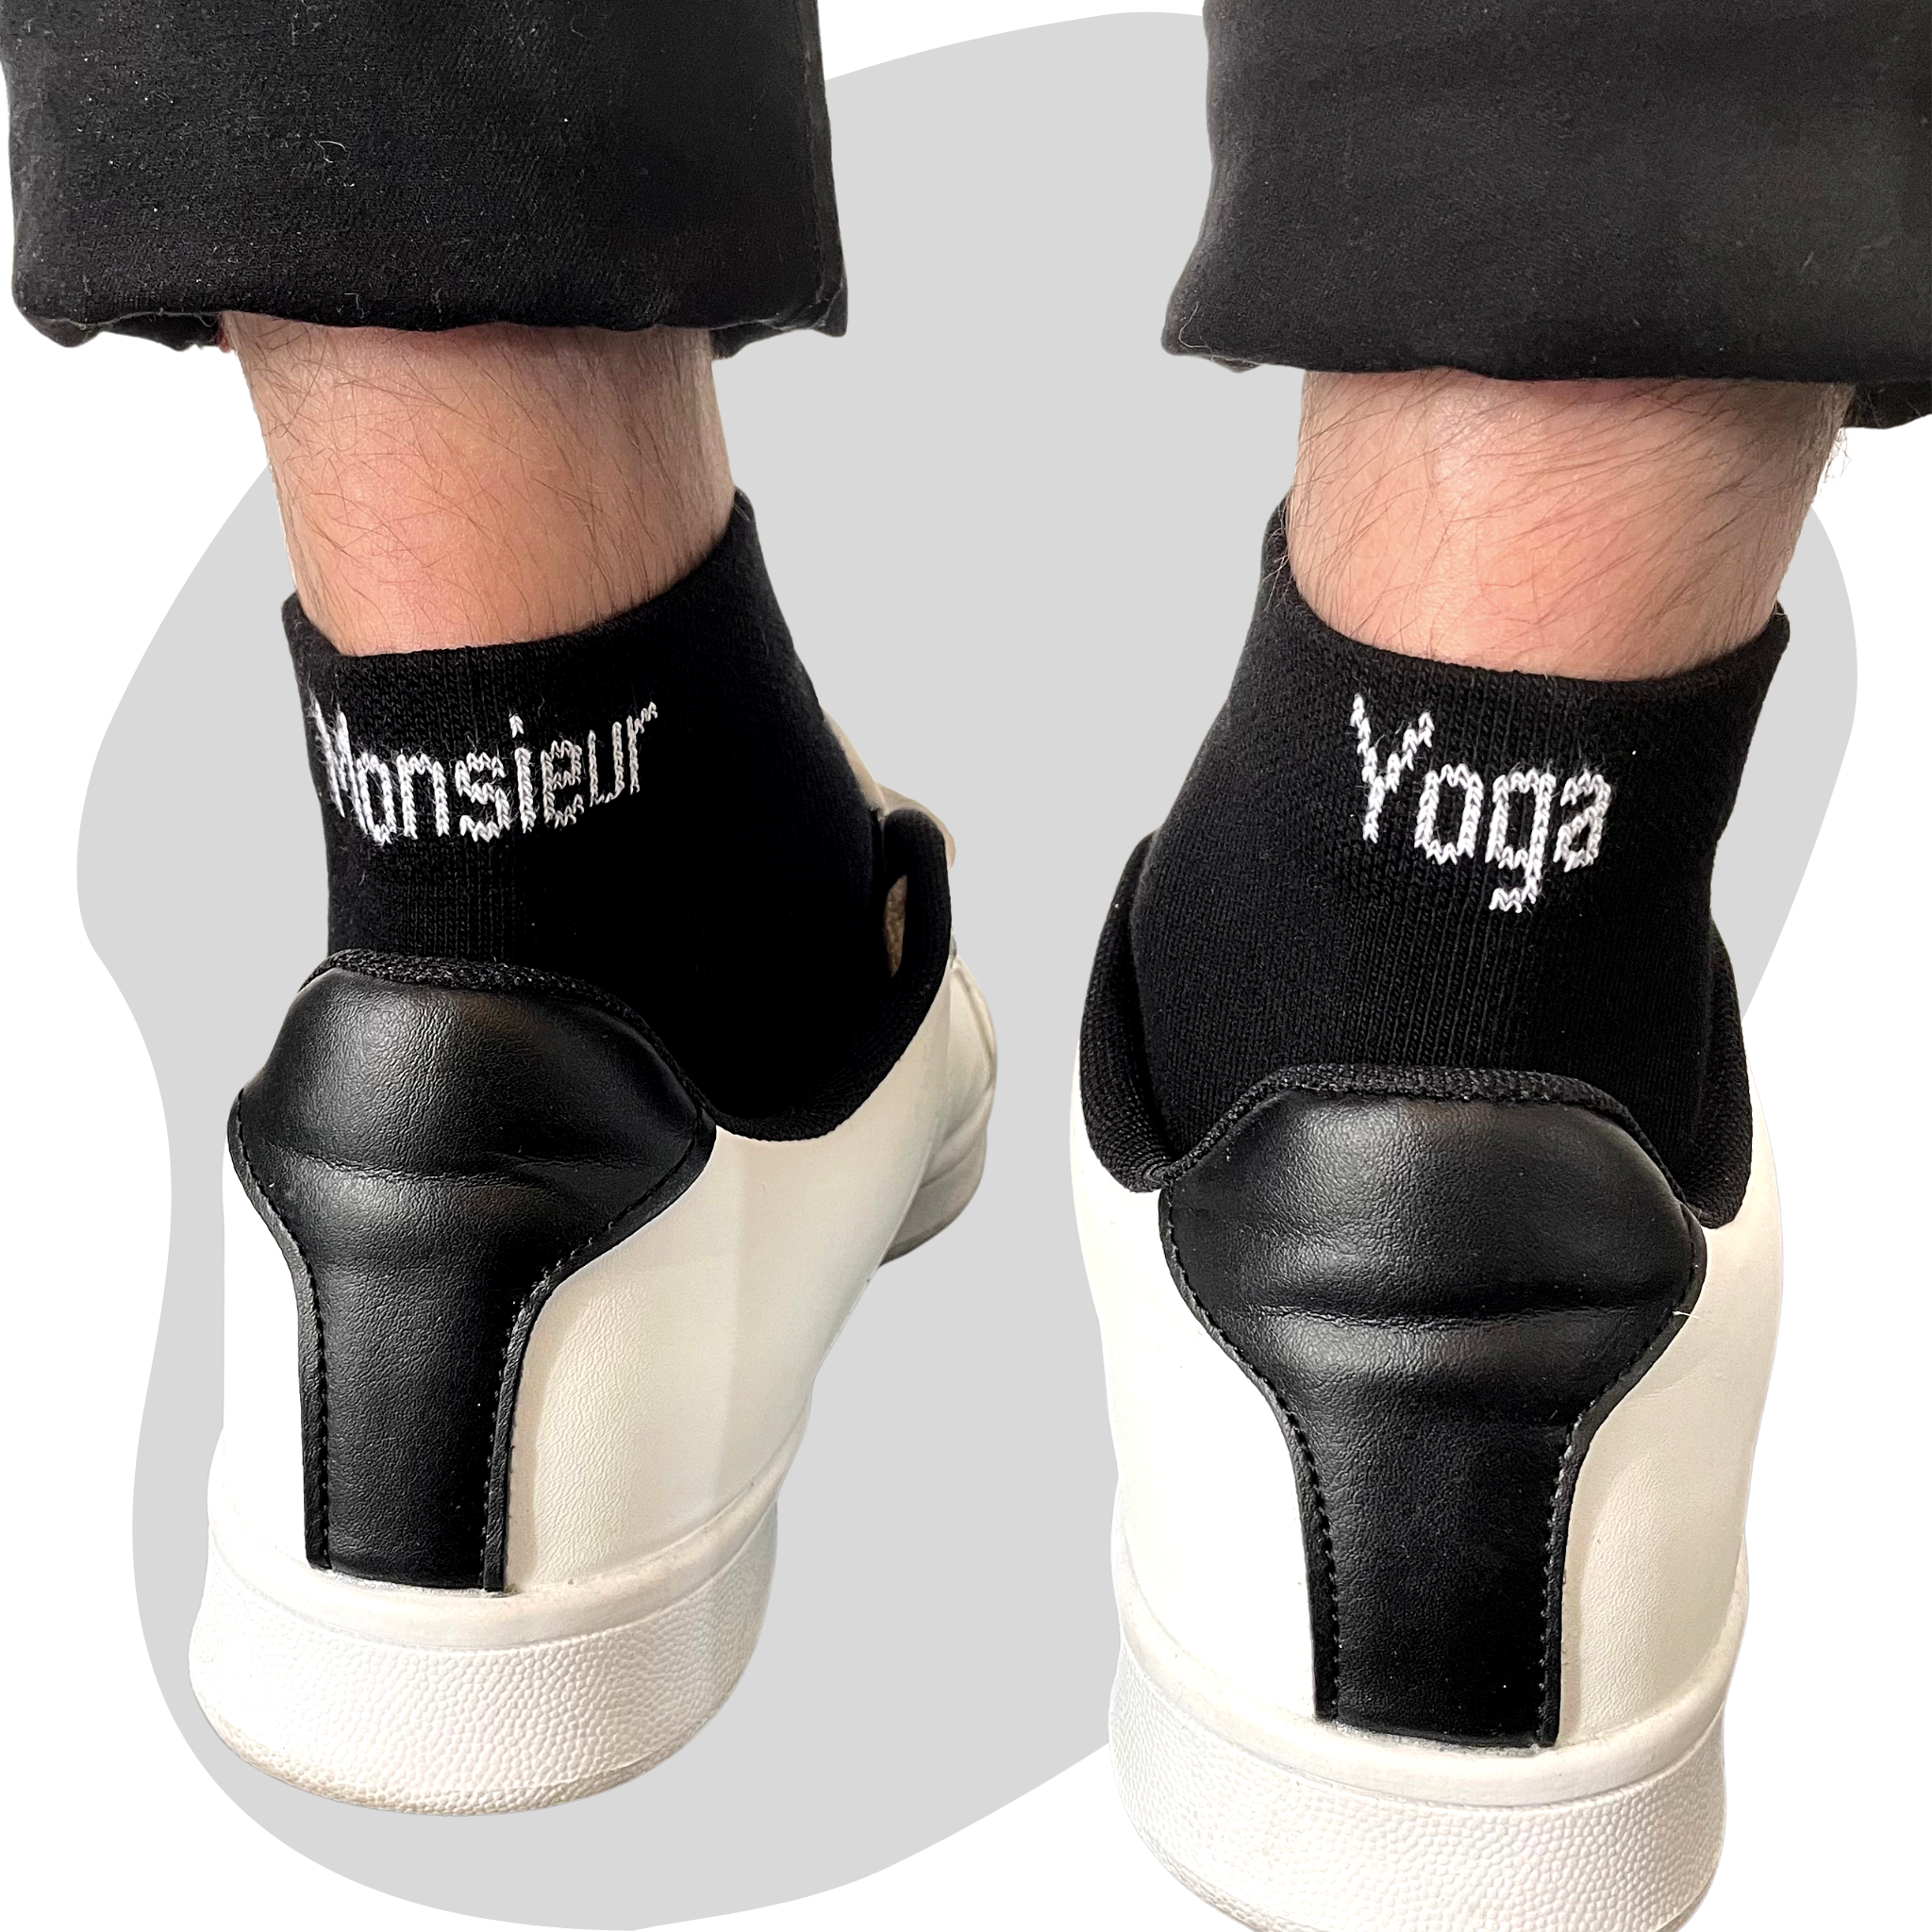 Chaussettes dépareillées Monsieur Yoga